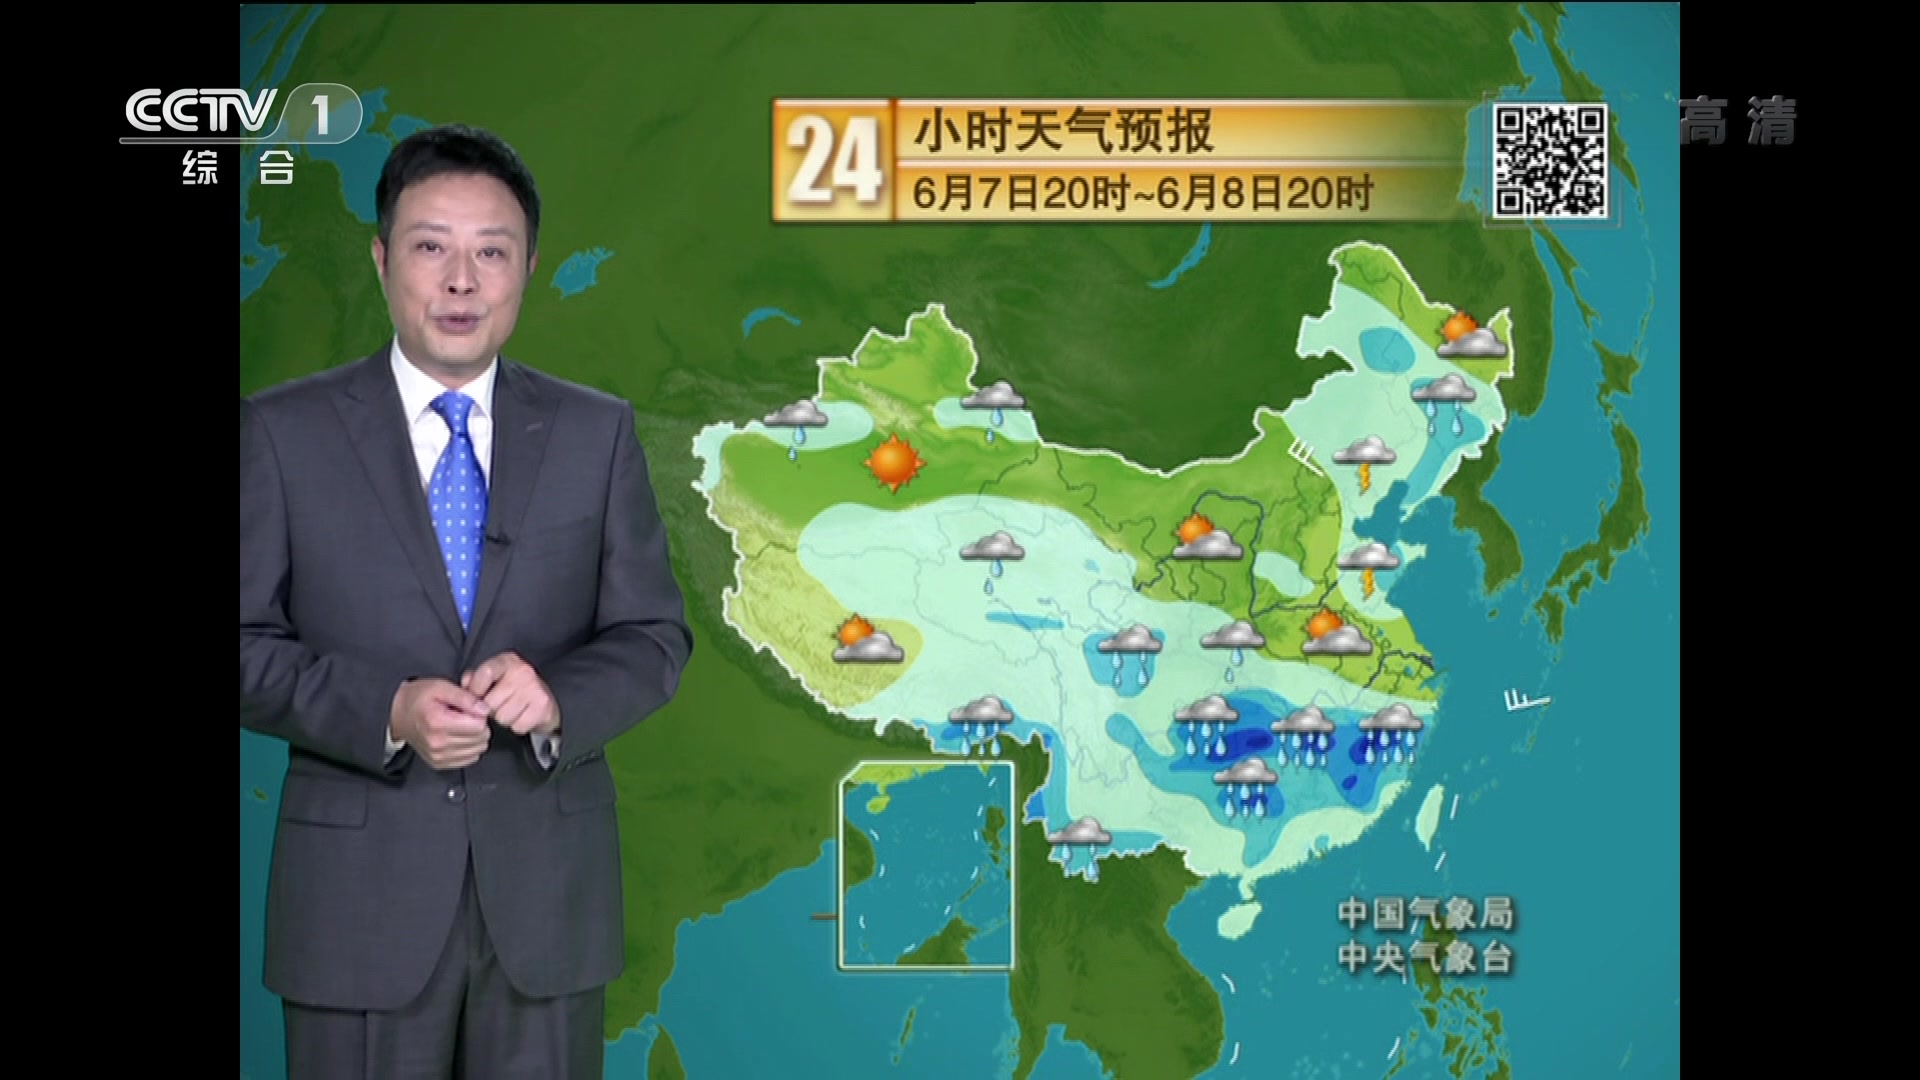 【放送文化】cctv1天气预报 主播:宋英杰(20190607)